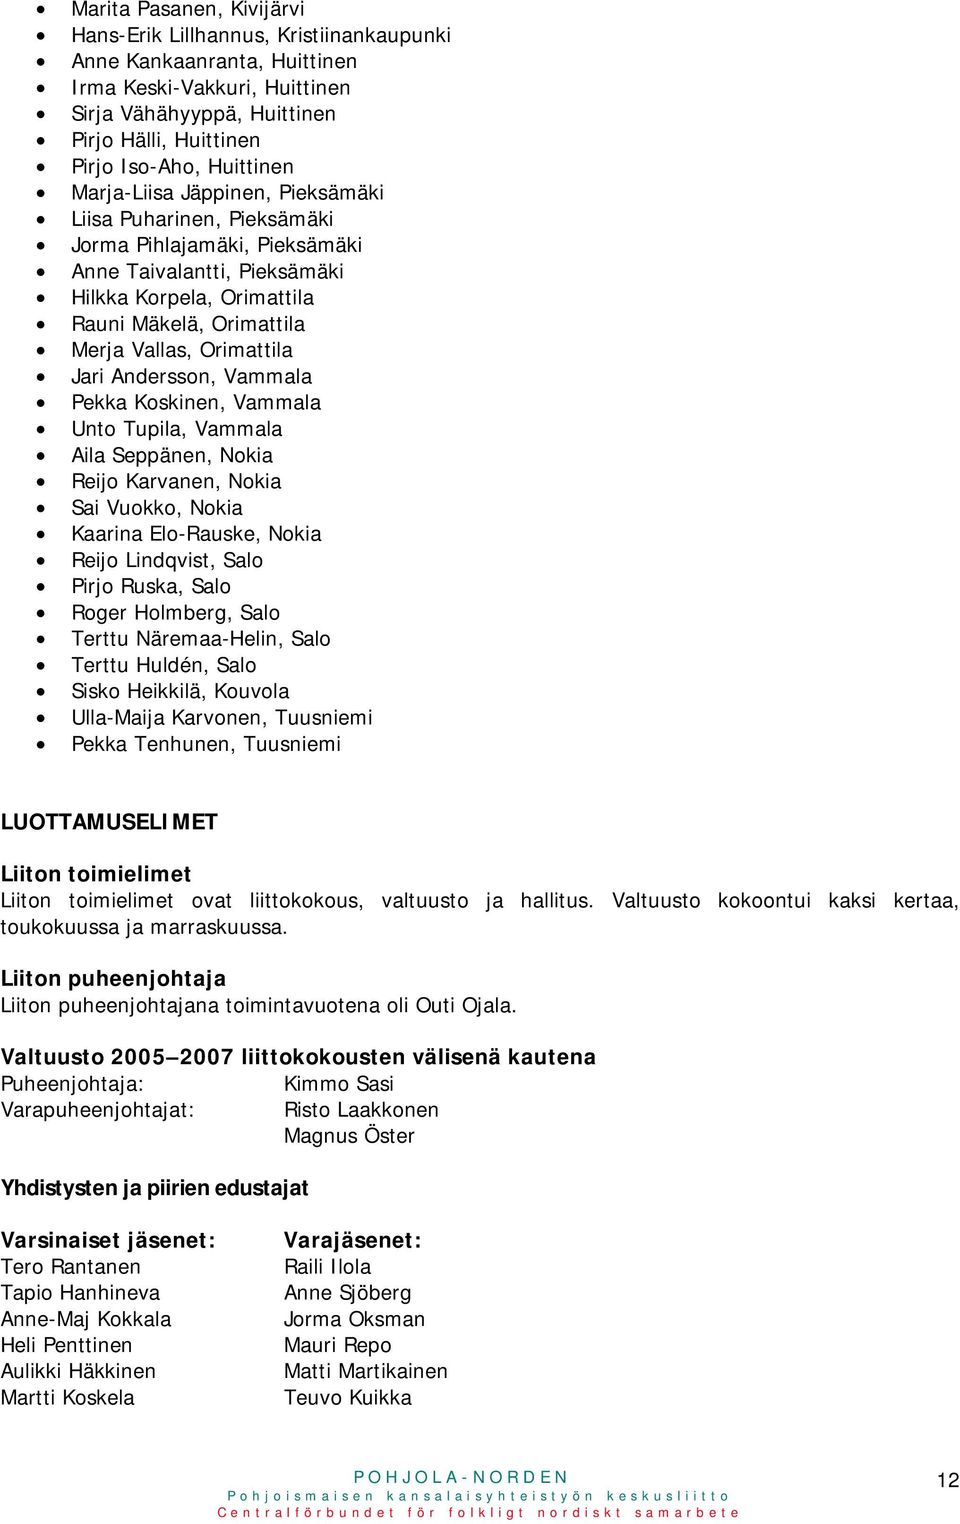 Orimattila Jari Andersson, Vammala Pekka Koskinen, Vammala Unto Tupila, Vammala Aila Seppänen, Nokia Reijo Karvanen, Nokia Sai Vuokko, Nokia Kaarina Elo-Rauske, Nokia Reijo Lindqvist, Salo Pirjo